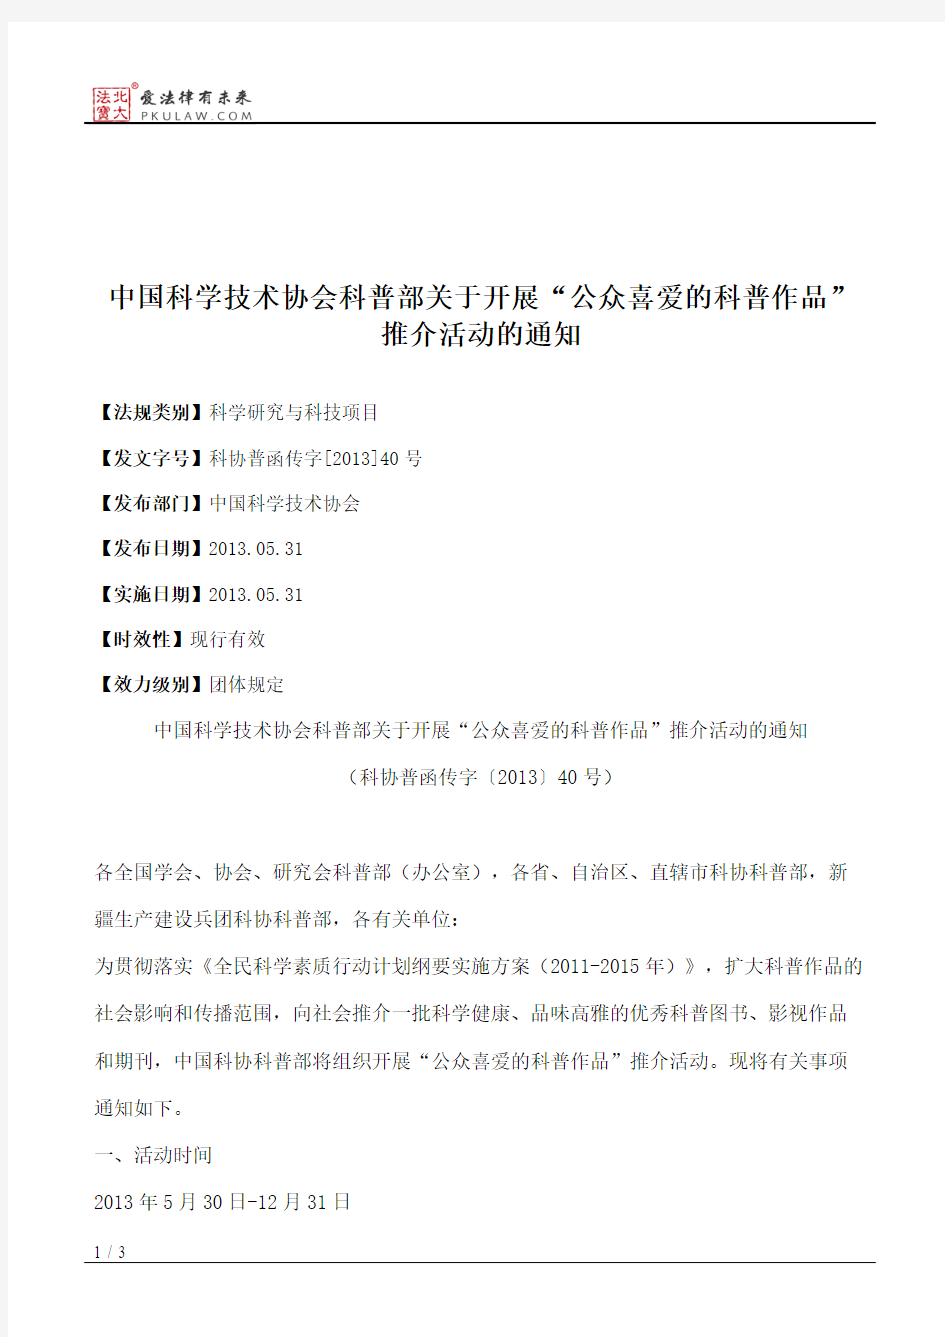 中国科学技术协会科普部关于开展“公众喜爱的科普作品”推介活动的通知